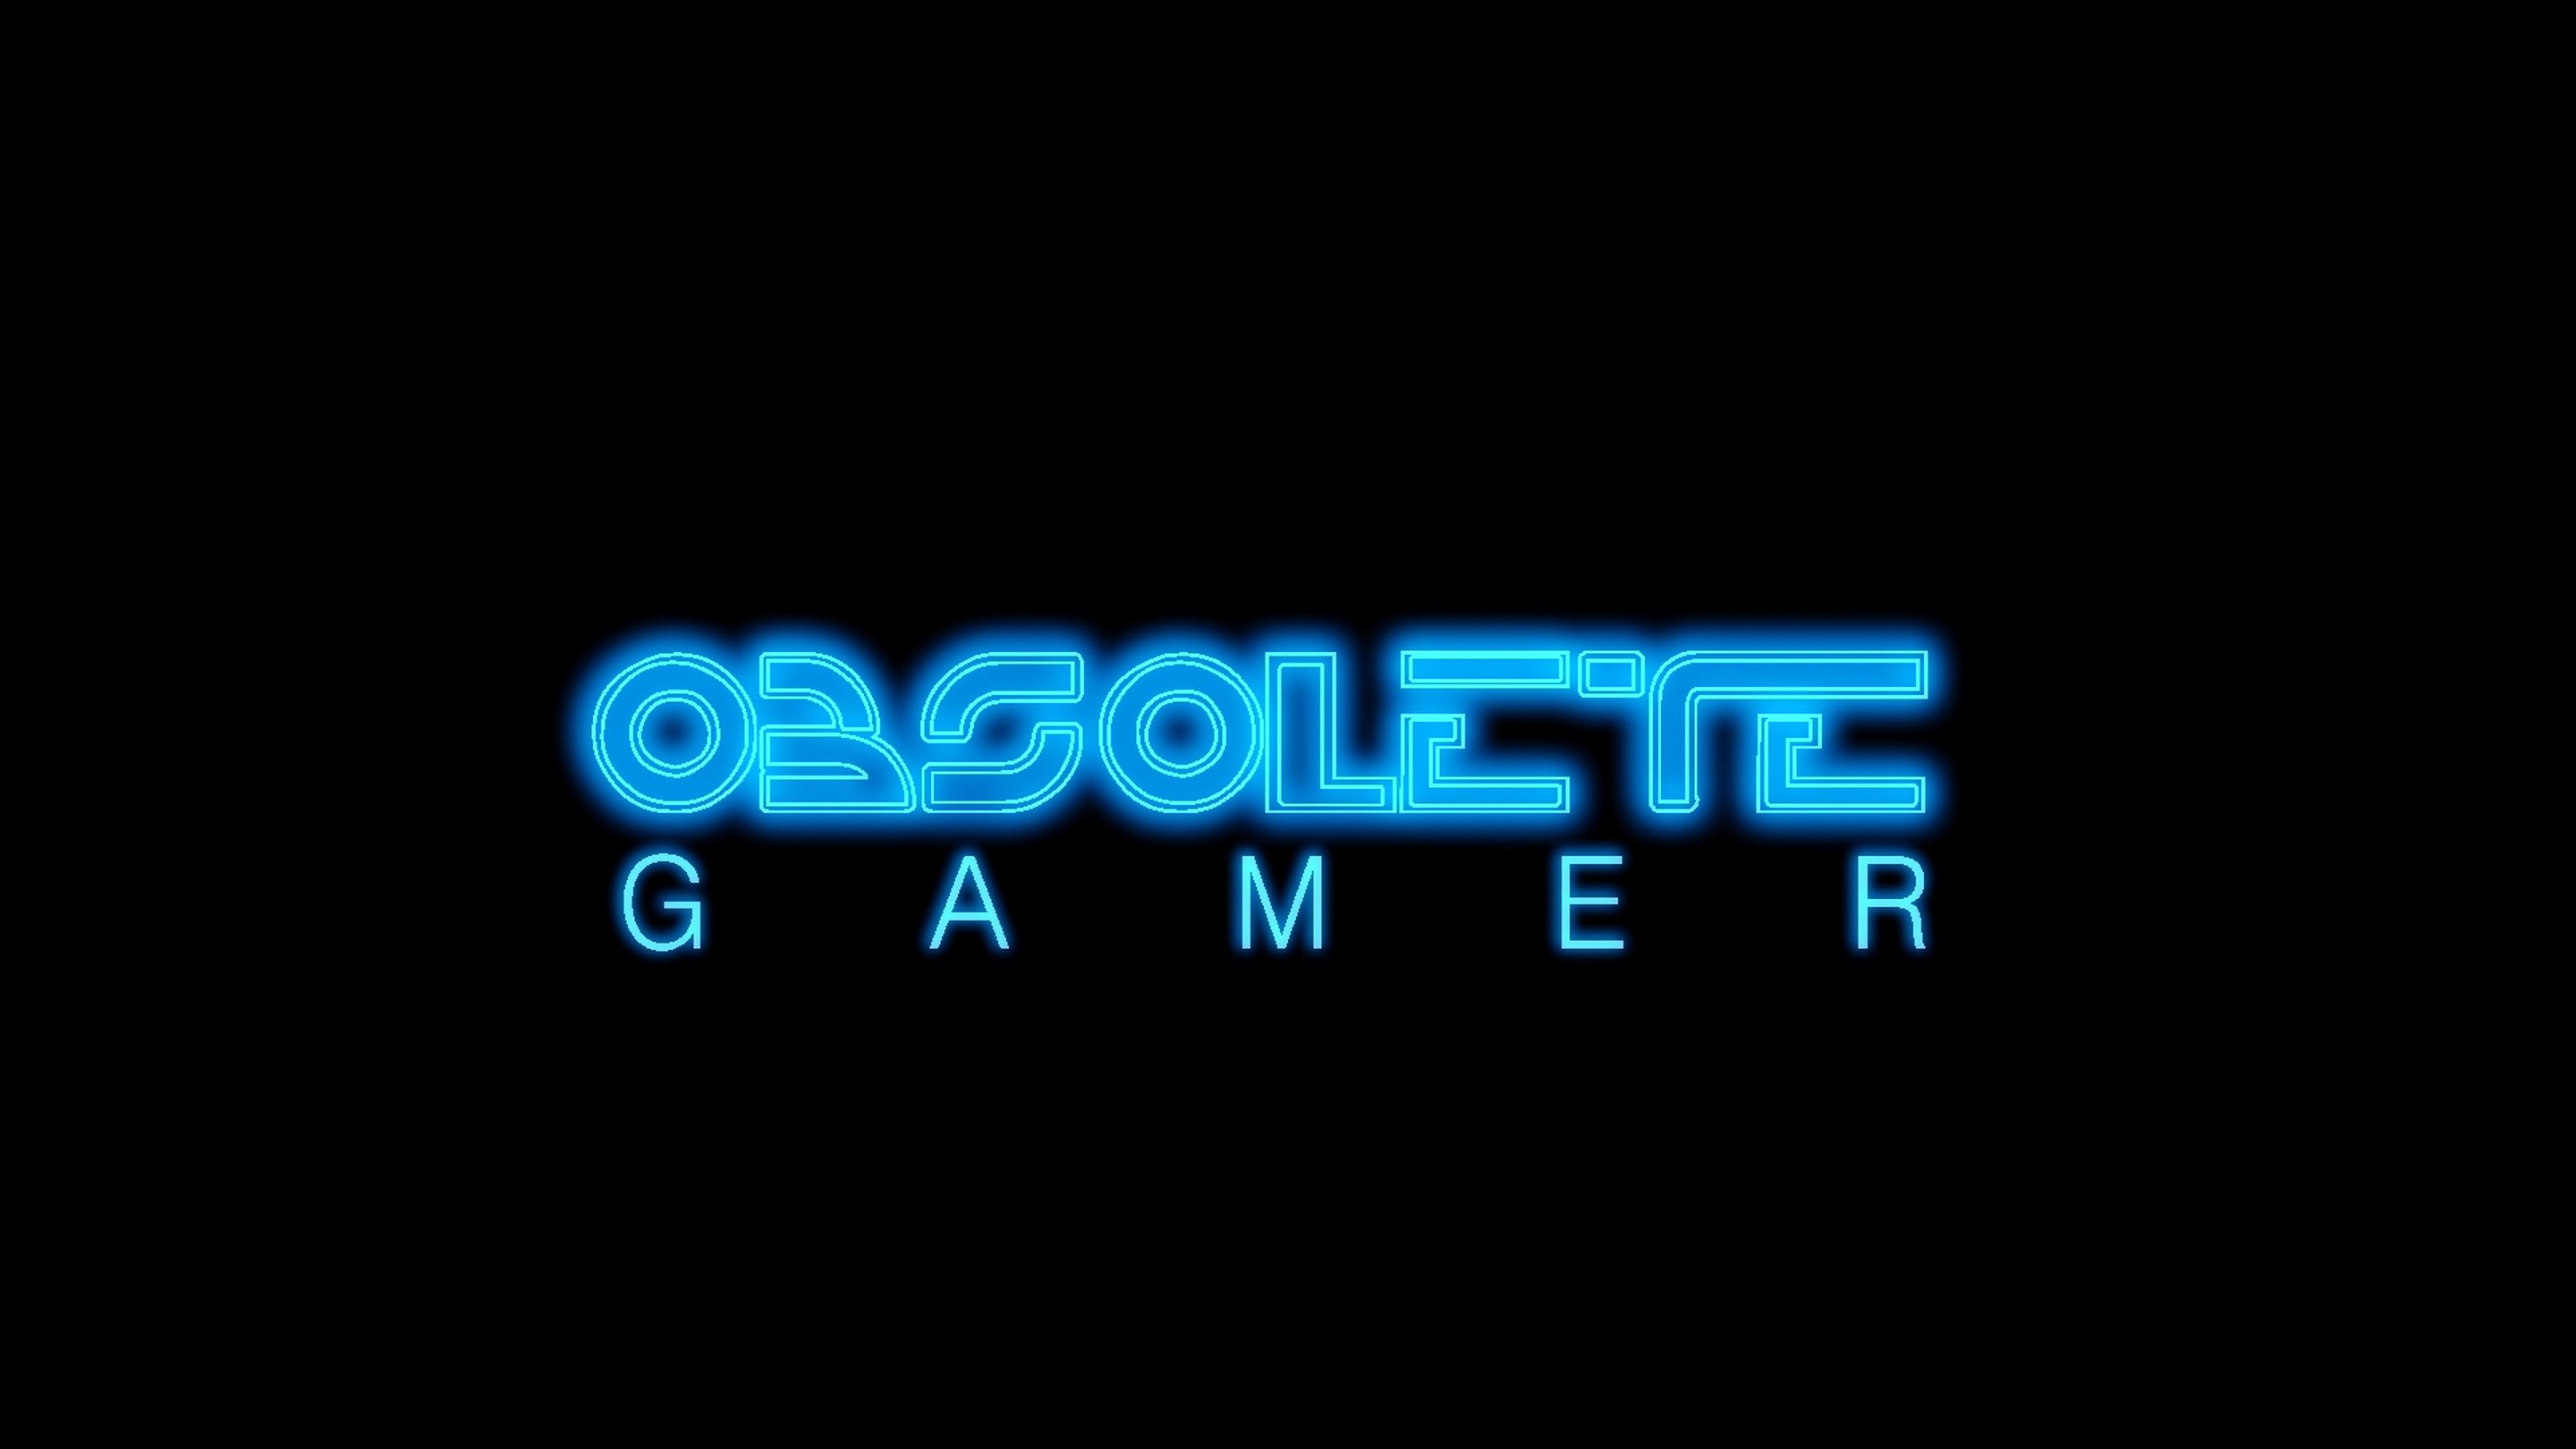 All gaming com. Логотип геймера. Фото логотип Gamer. Логотип магазина компьютерных игр. Логотип геймер Cod.